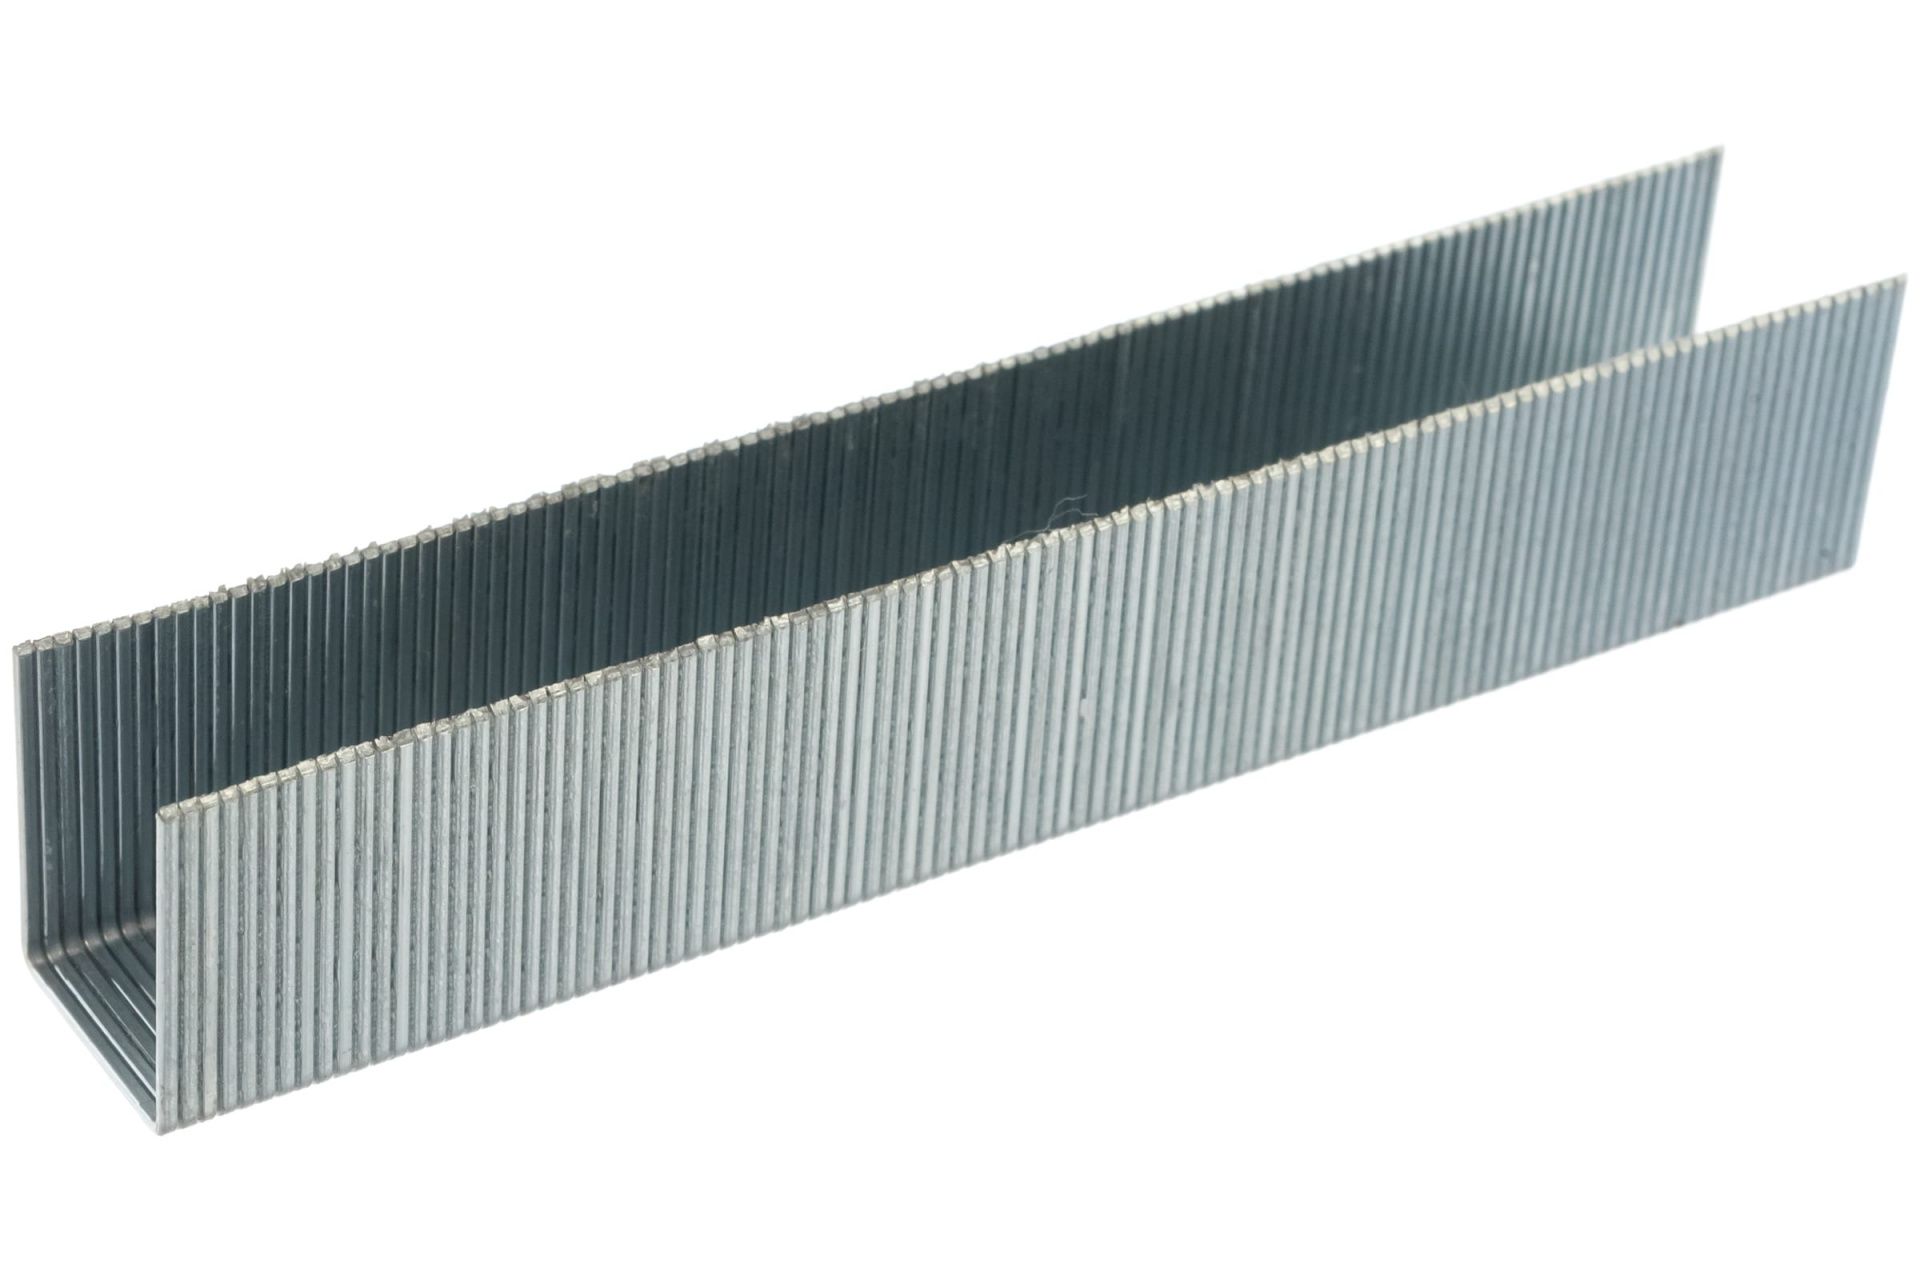 Скобы для степлера 6 мм, Тип 53, толщина 0,74 мм, ширина 11,4 мм, (1000 шт) коробка ПРАКТИКА серия Мастер